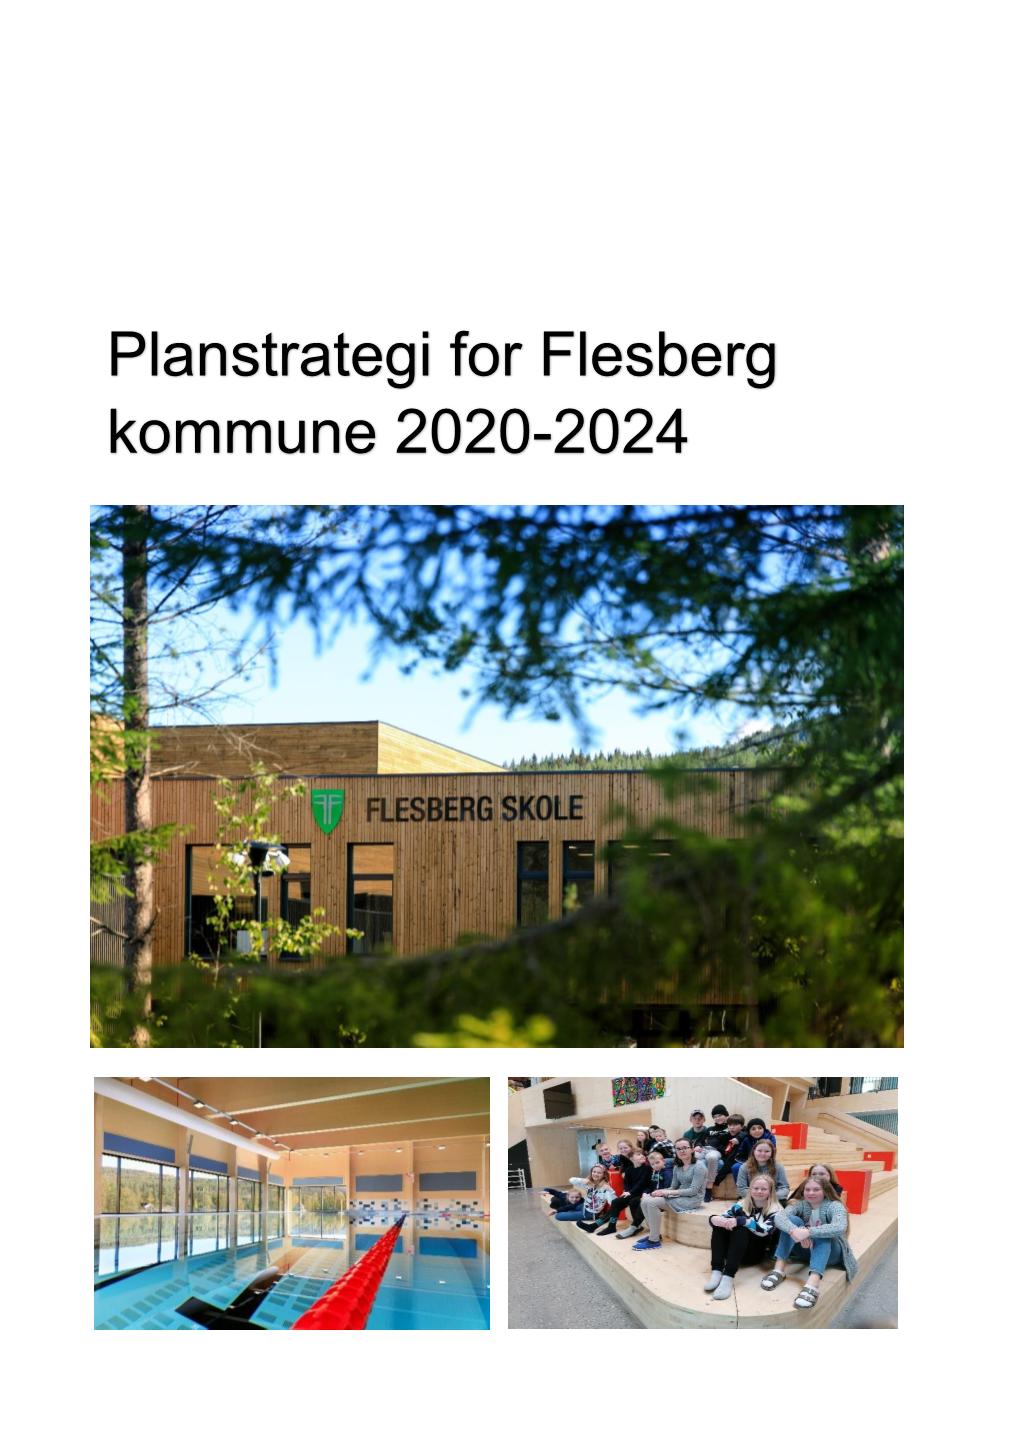 Planstrategi for Flesberg Kommune 2020-2024